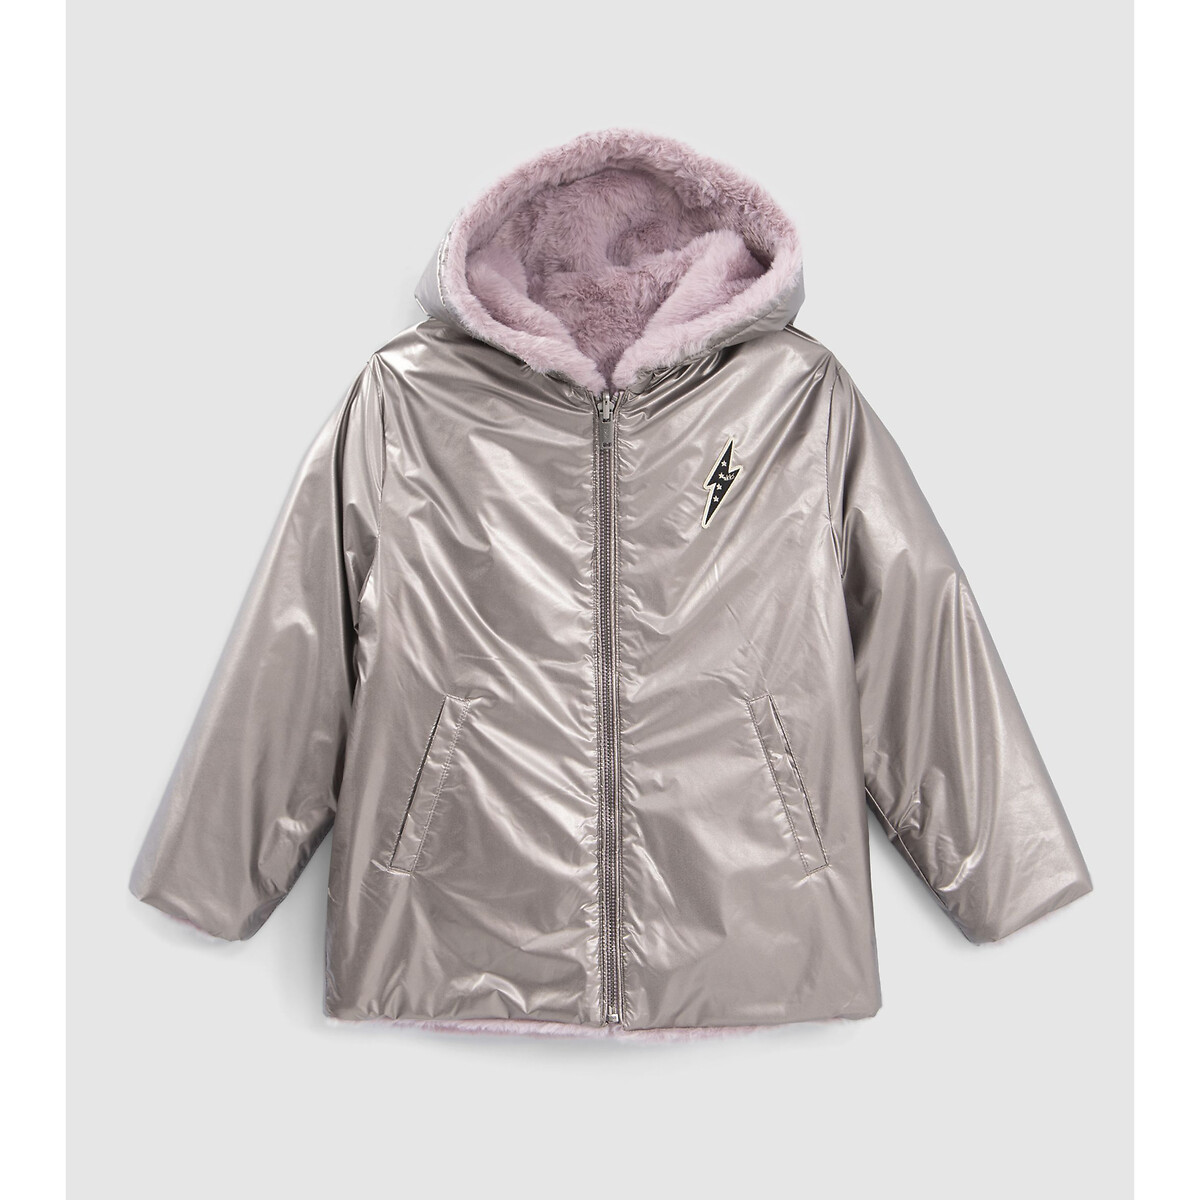 Куртка стеганая с капюшоном с металлическим отливом 6 лет - 114 см розовый куртка стеганая двухсторонняя с капюшоном 6 лет 114 см синий